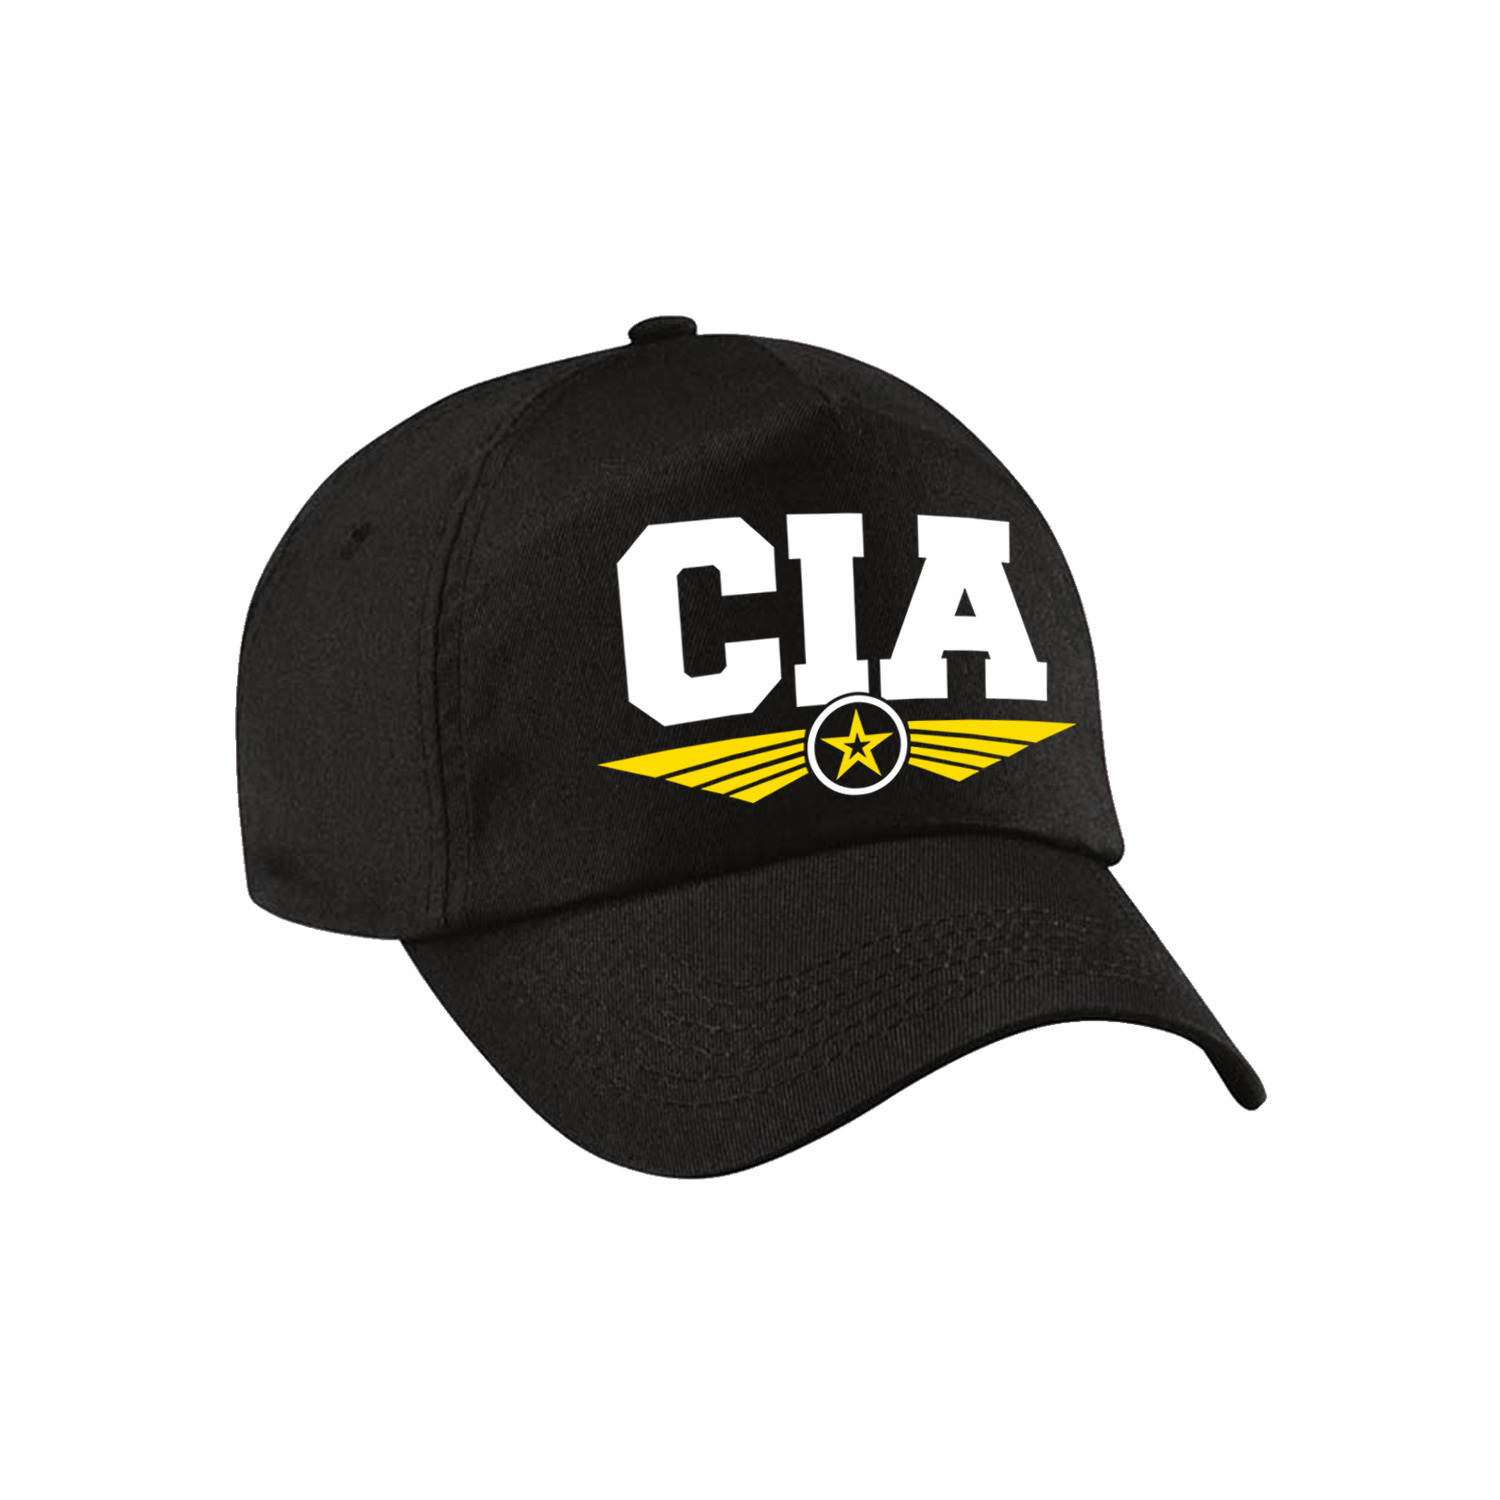 CIA agent tekst pet / baseball cap zwart voor kinderen